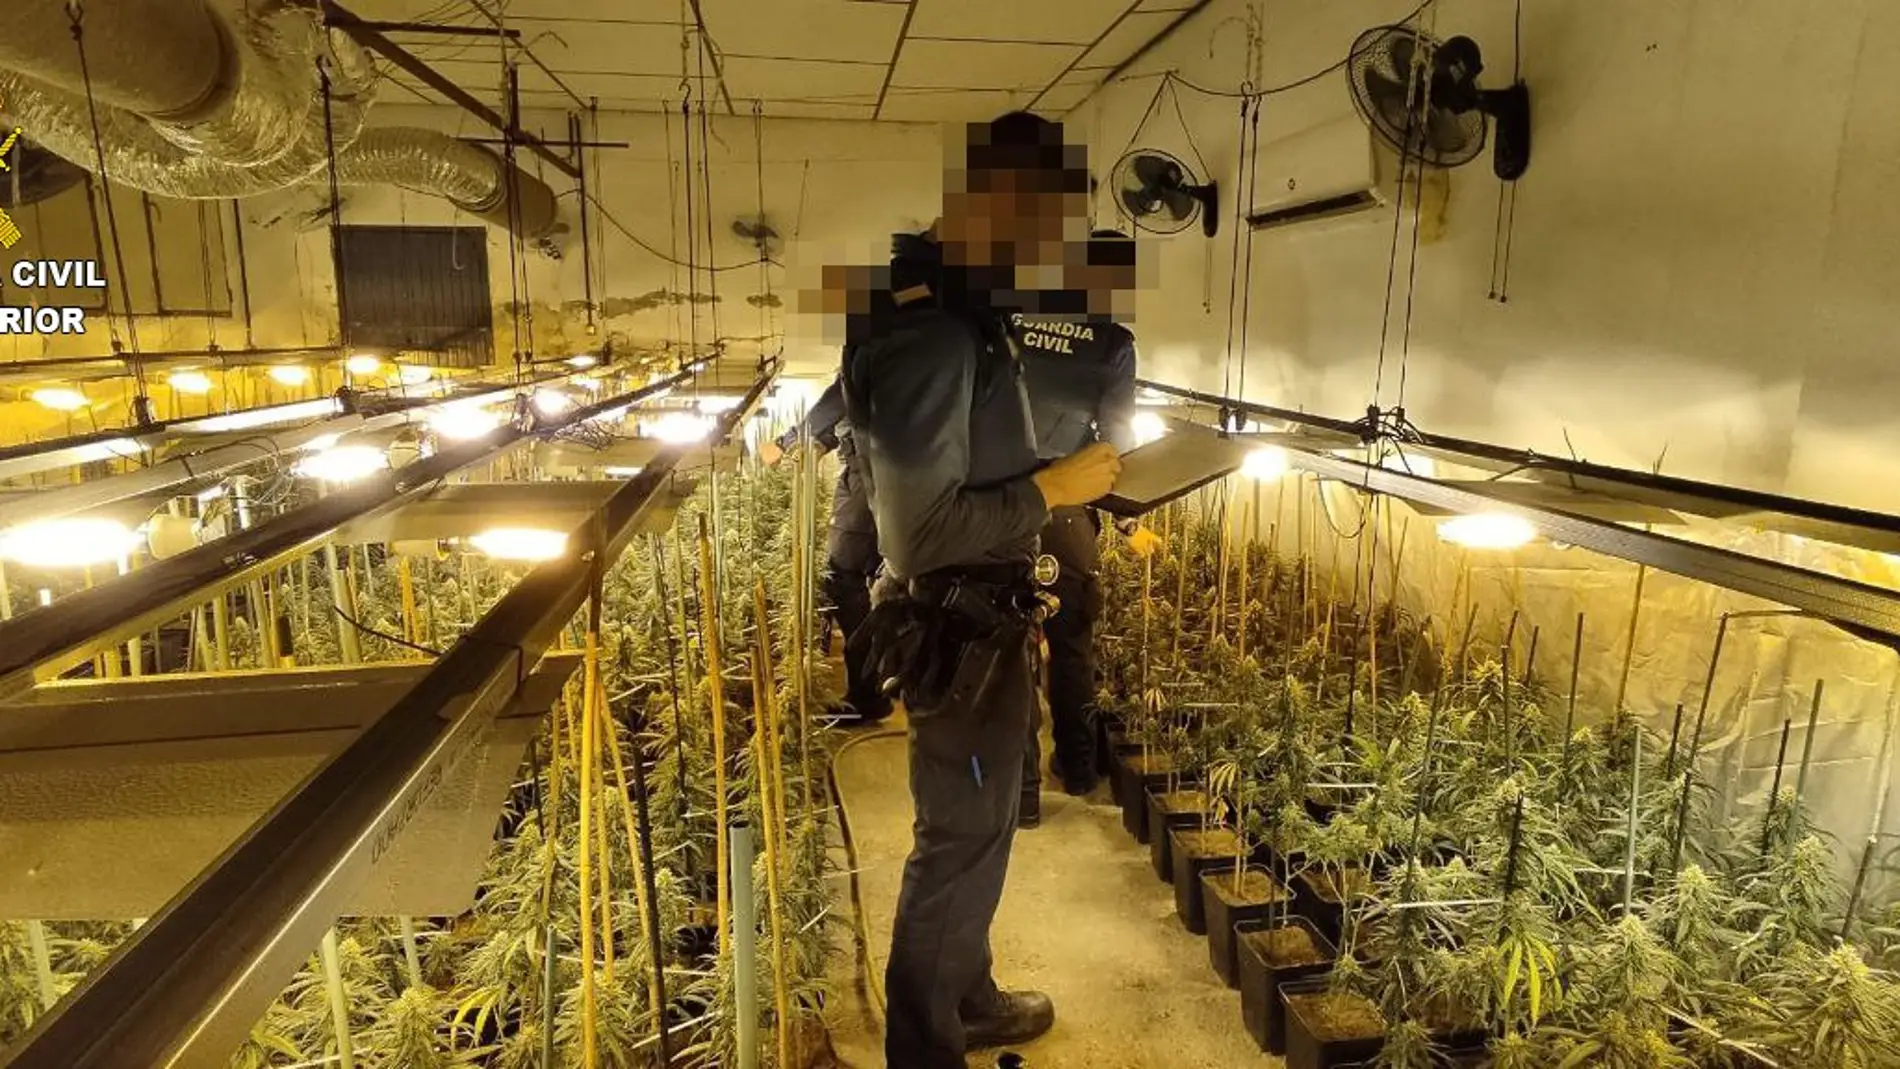 La Guardia Civil detiene a una persona por cultivo de drogas en El Carpio de Tajo (Toledo)